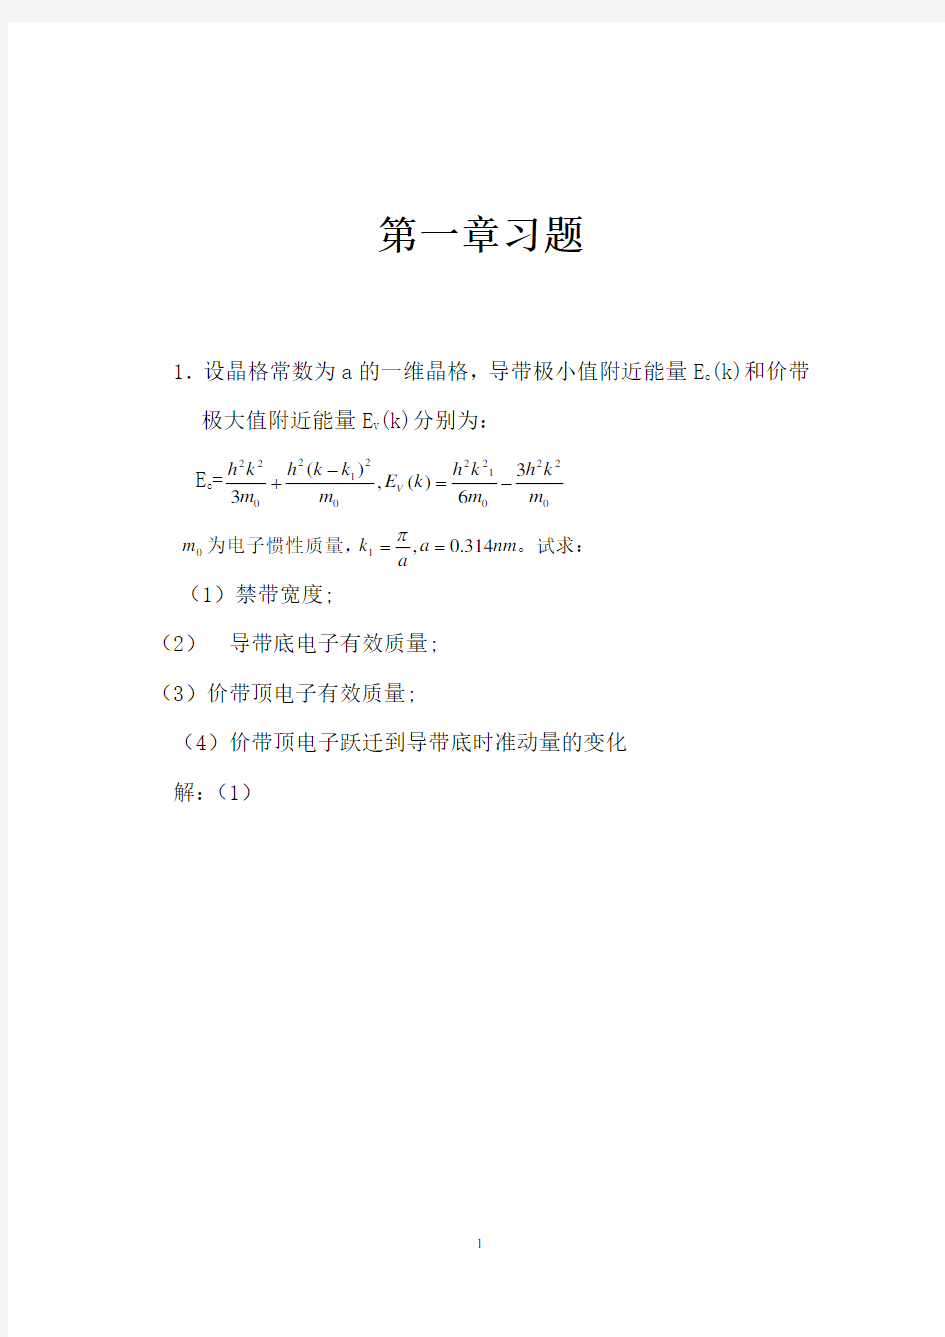 半导体物理学(刘恩科)第七版-完整课后题答案